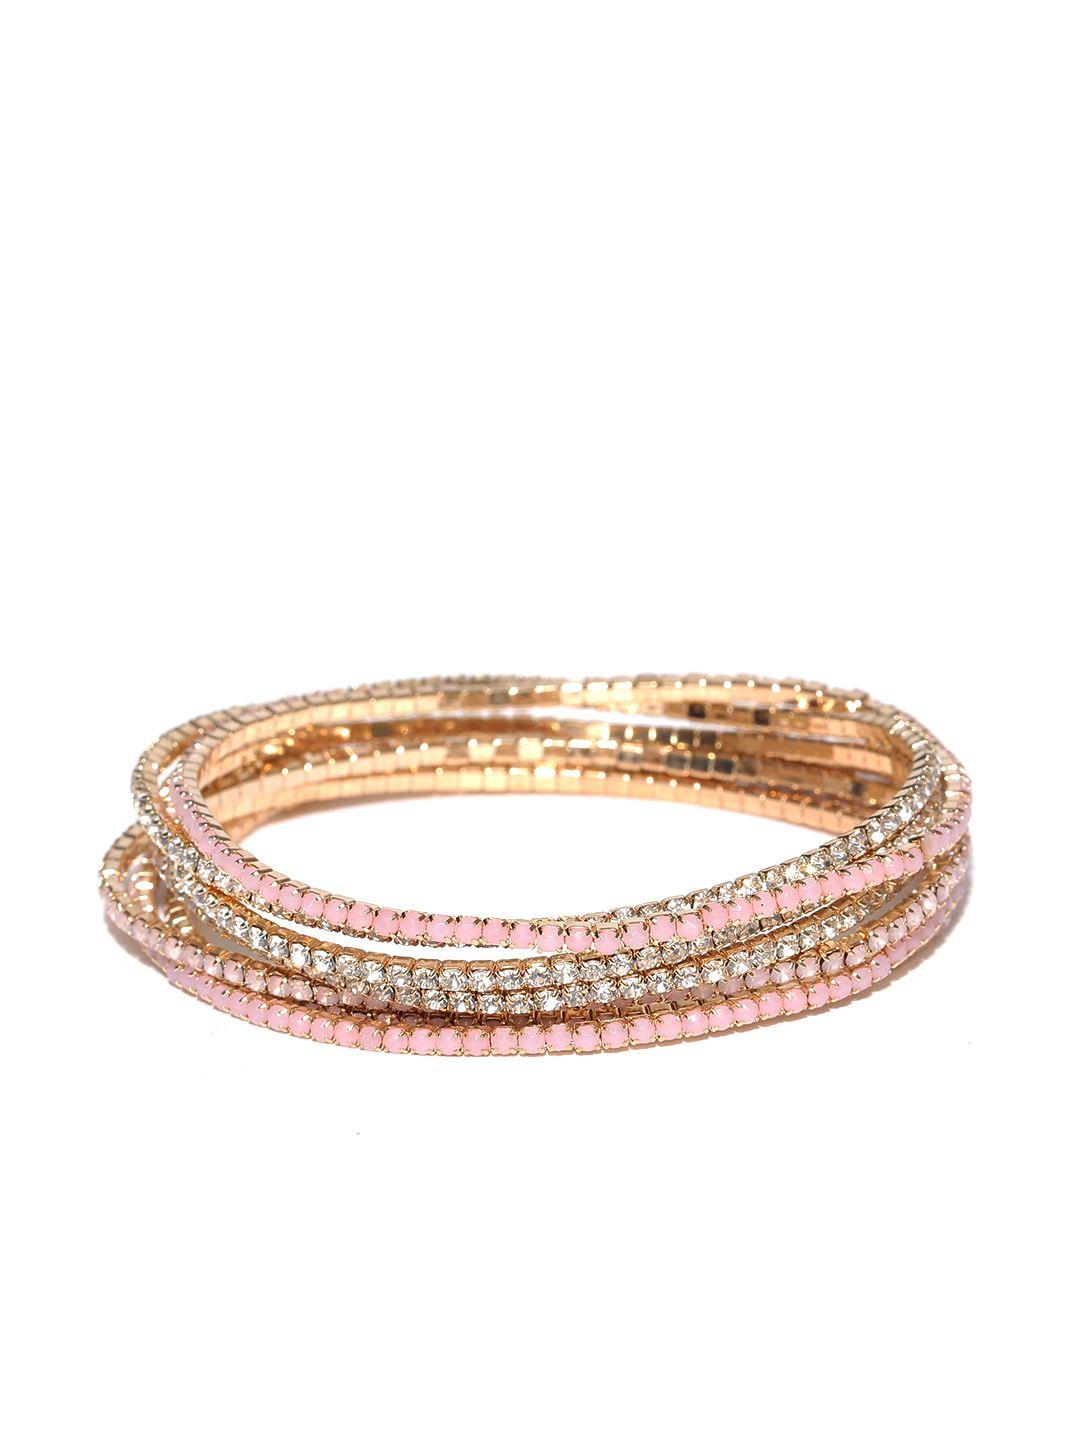 accessorize set of 7 stone-studded bracelets